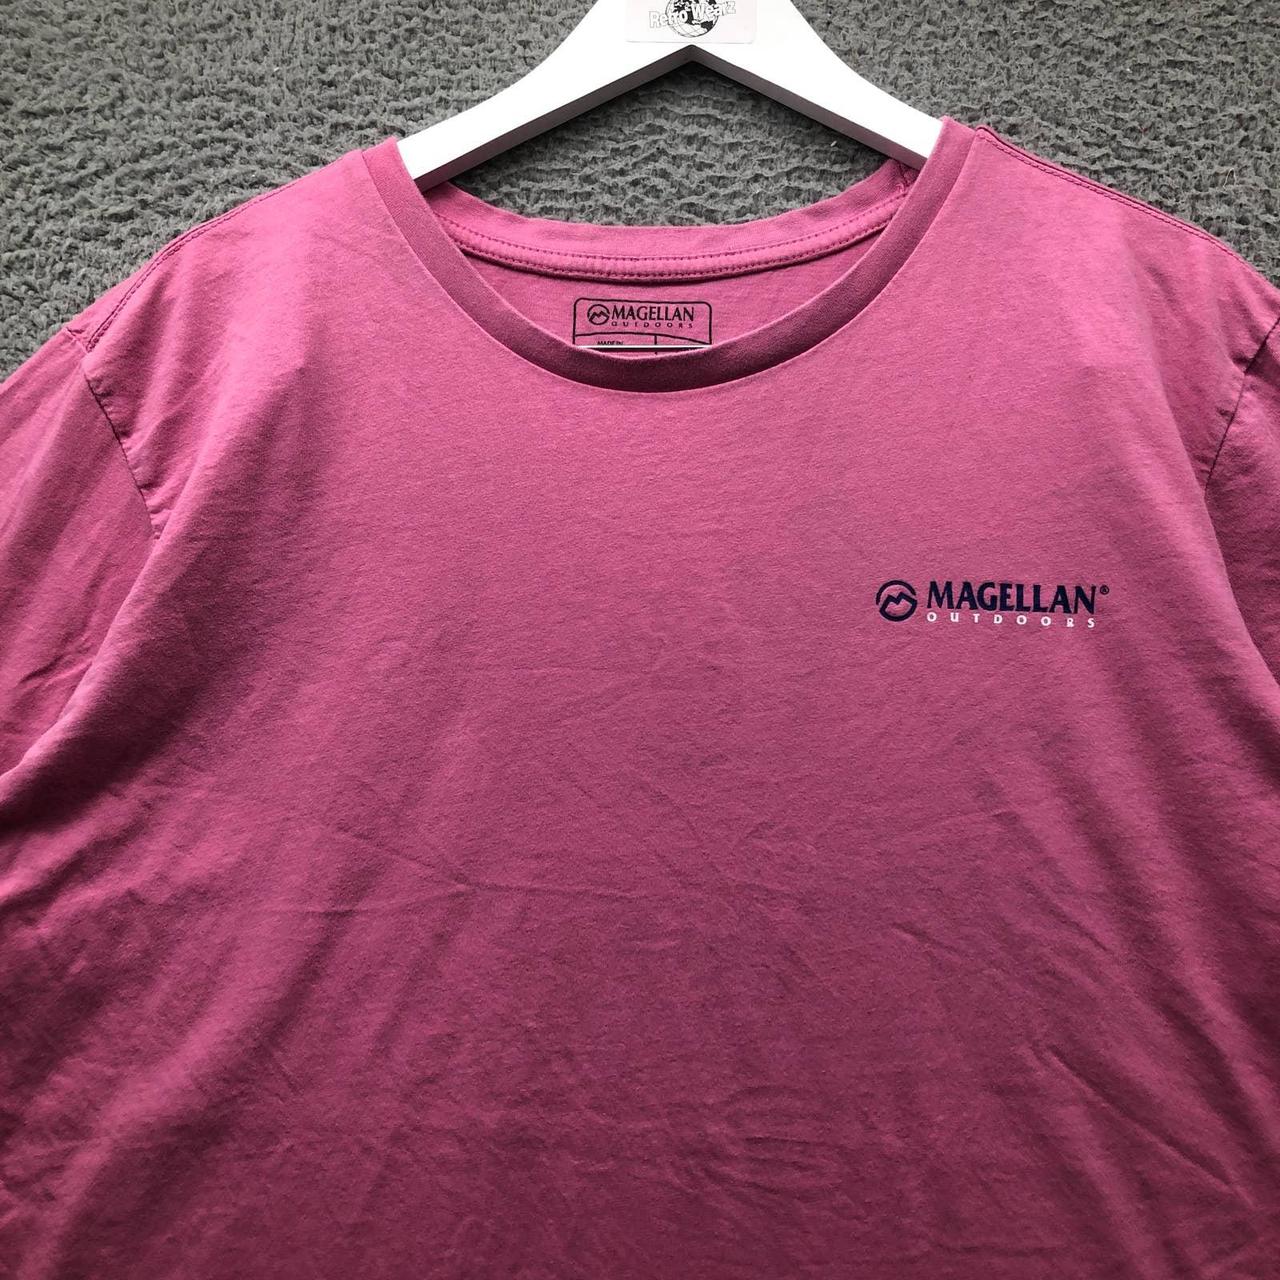 Magellan Men's T-Shirt - Pink - XL